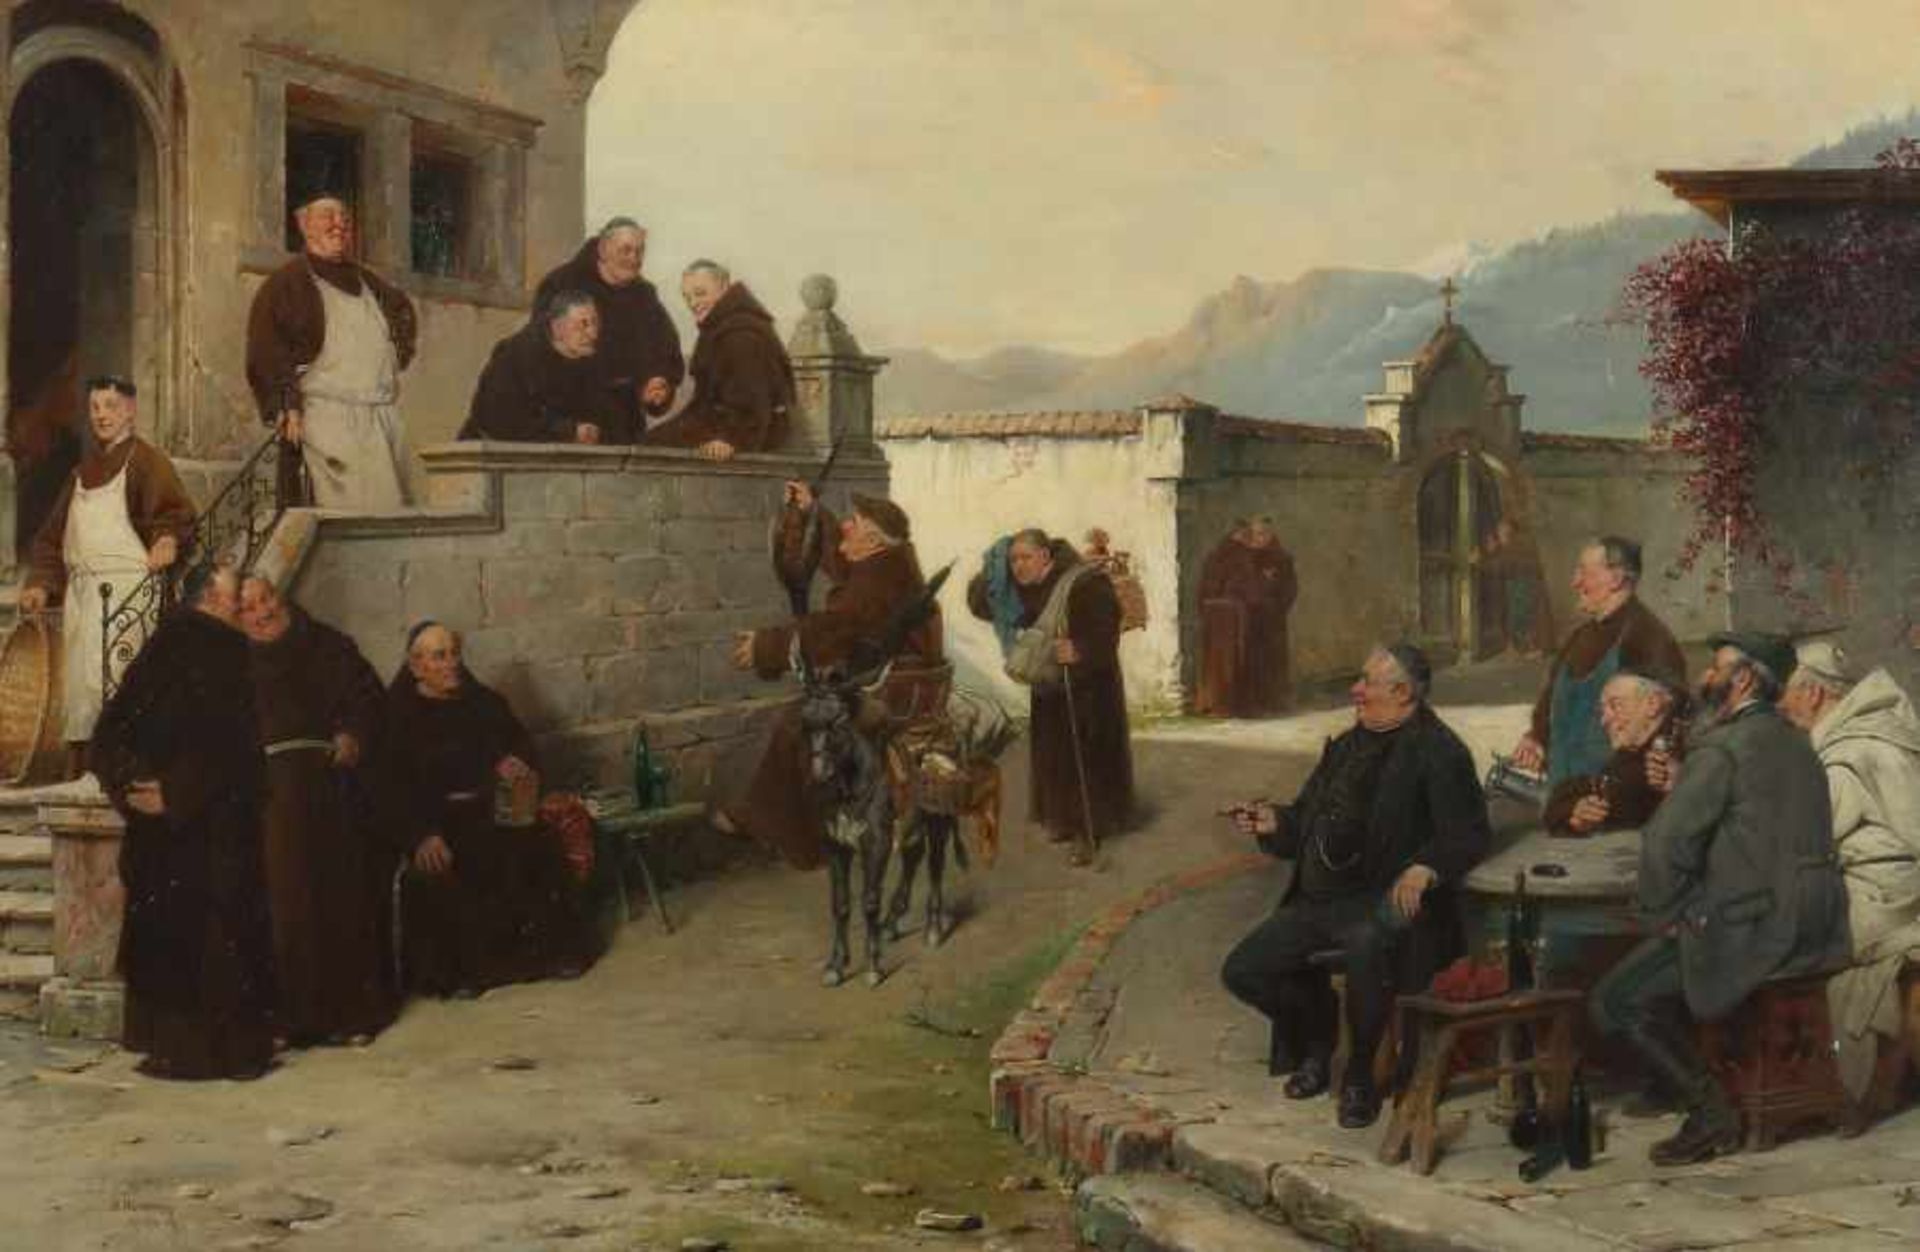 Humborg, AdolfOravicabanya/Ungarn 1847 - 1921 München, österreichischer Maler. "Ankunft der